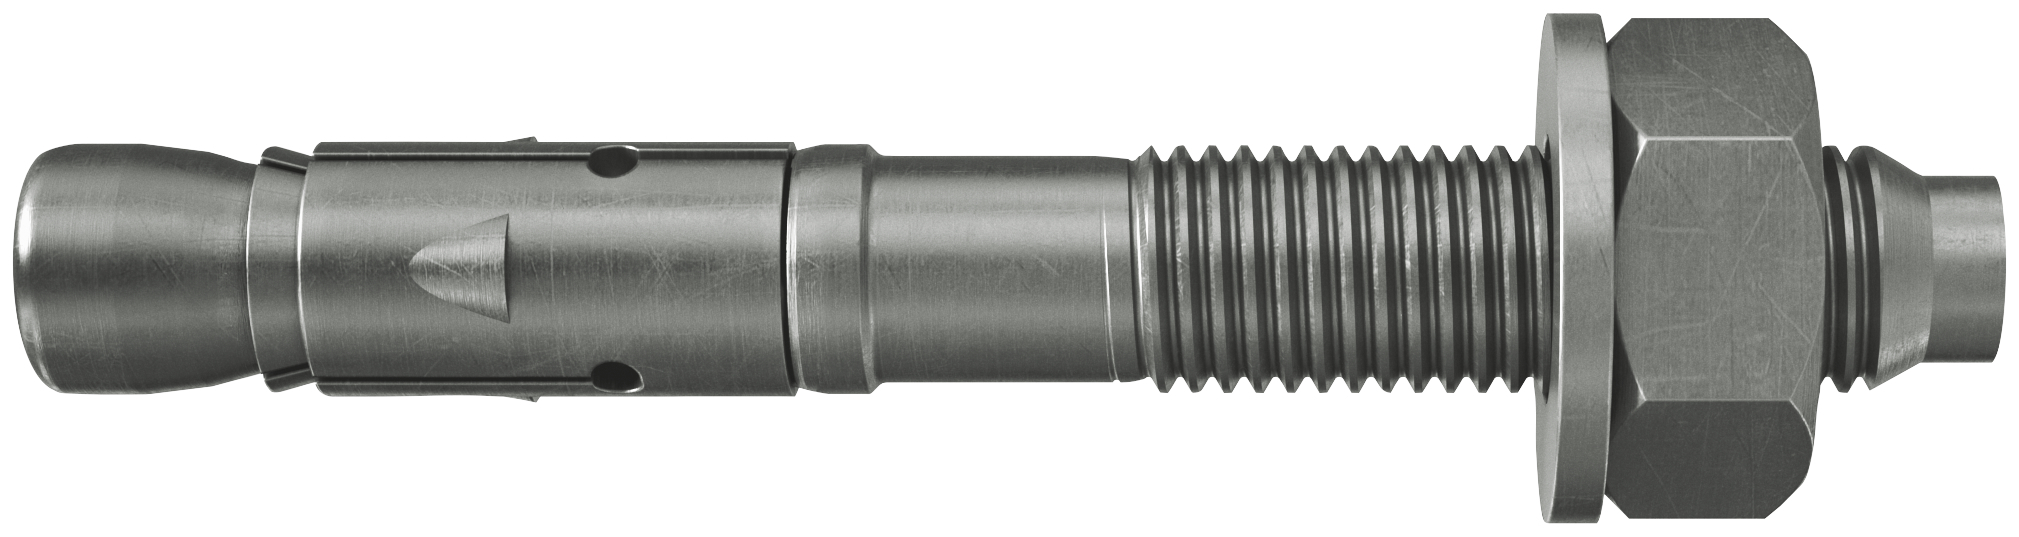 fischer Tassello acciaio FAZ II 6/20 A4 (50 Pz.) L'ancorante ad espansione ad alte prestazioni per carichi statici su calcestruzzo fessurato e per applicazioni sismiche. Versione in acciaio inossidabile con classe di resistenza alla corrosione CRC III..